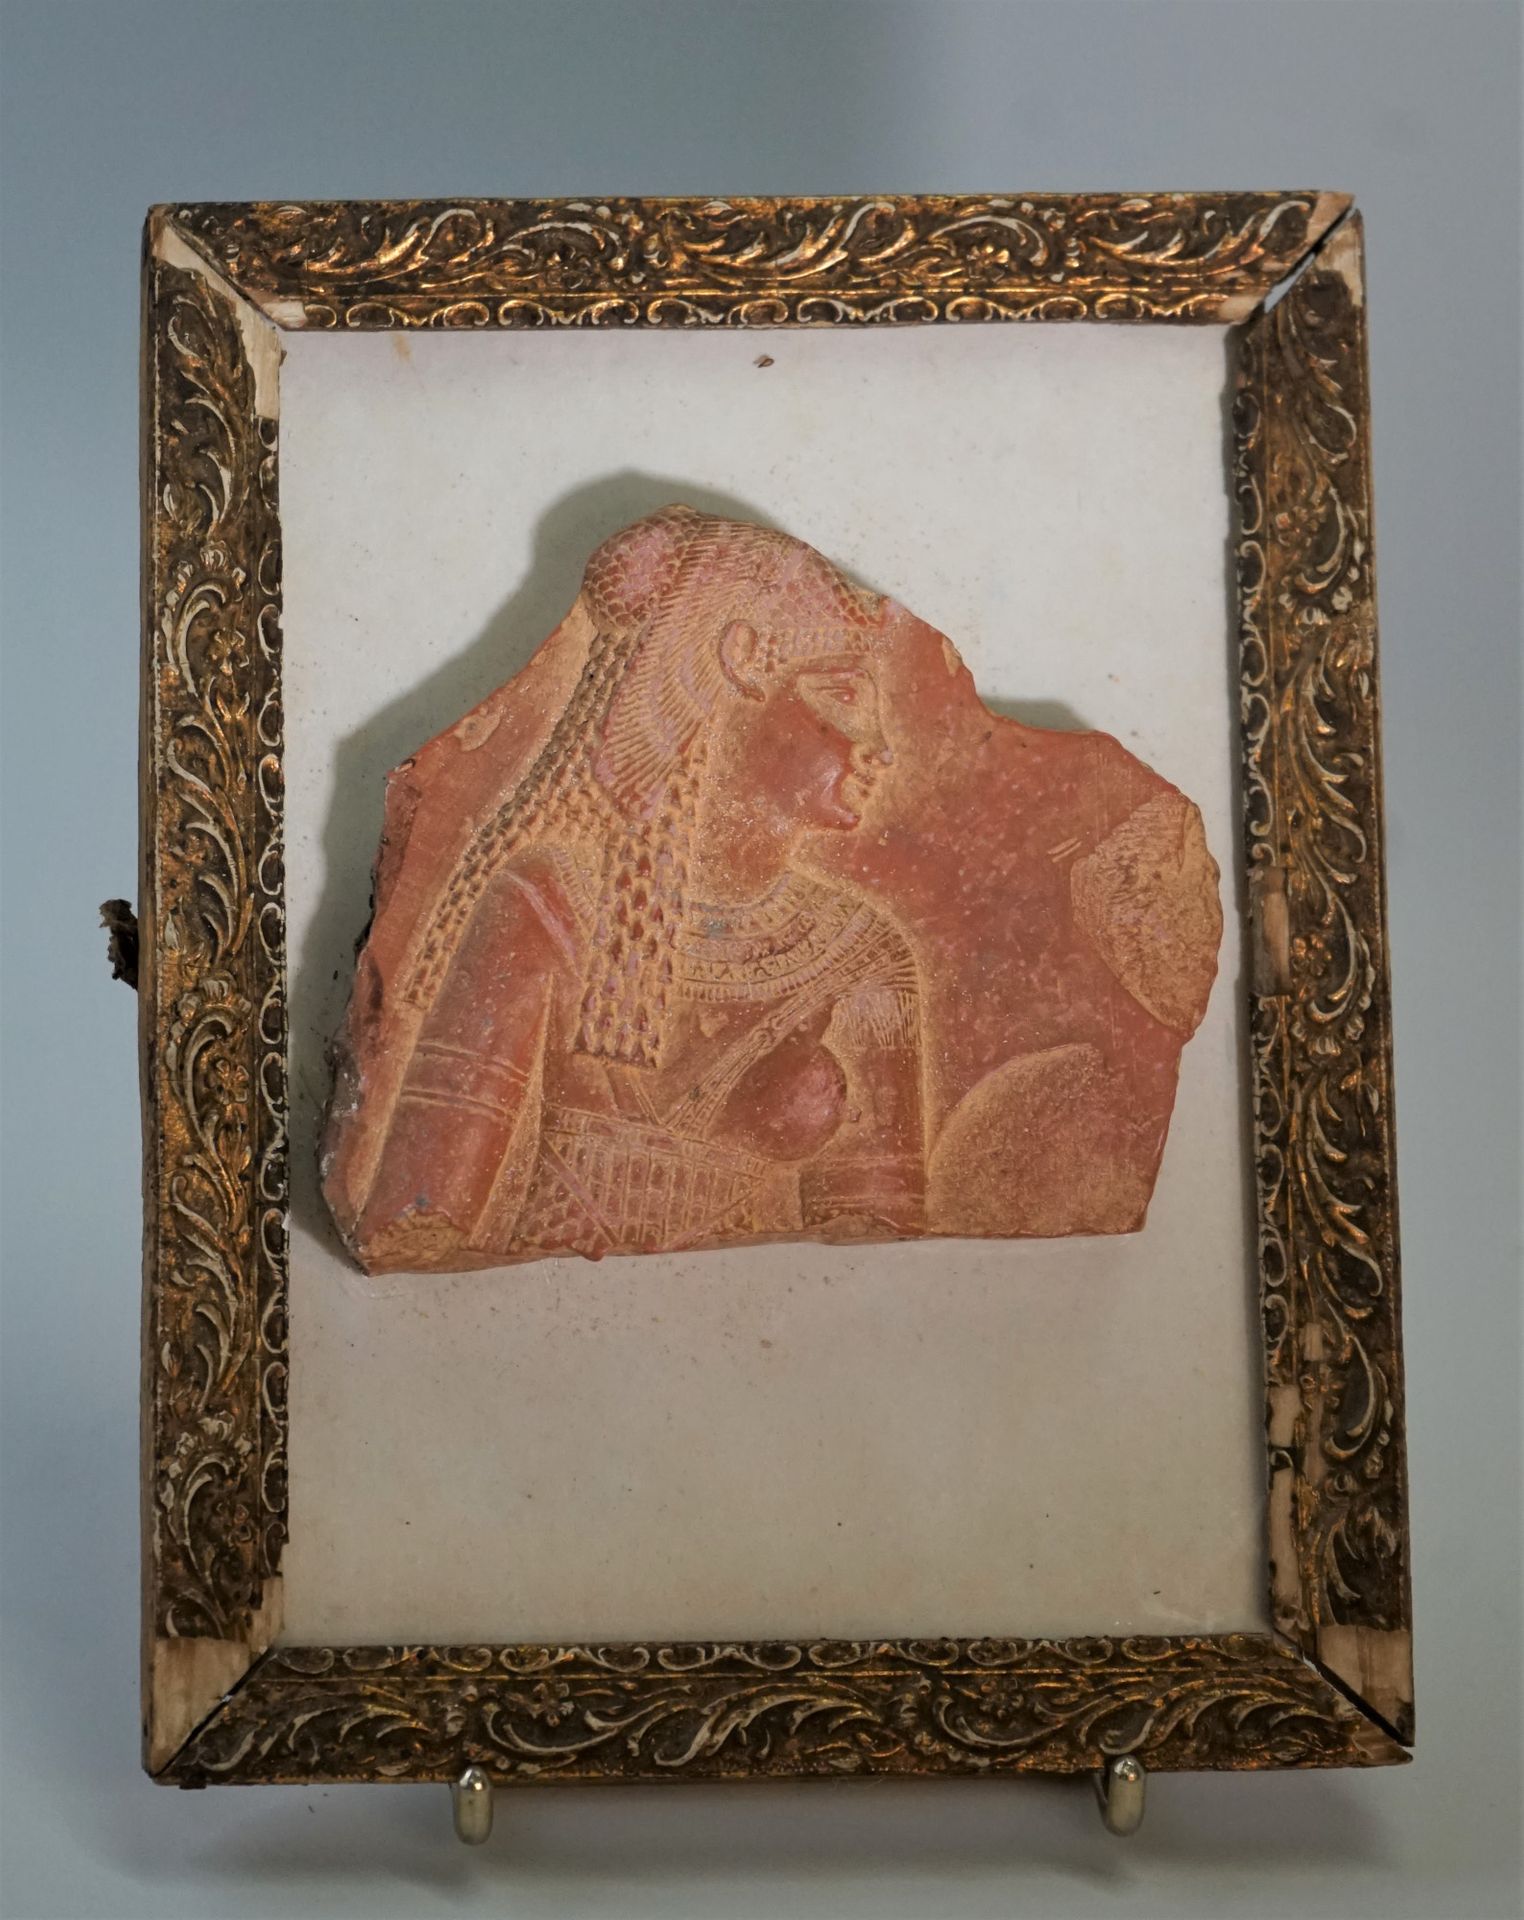 Null Fragmento que representa a una reina ptolemaica.

Obra del antiguo Egipto

&hellip;